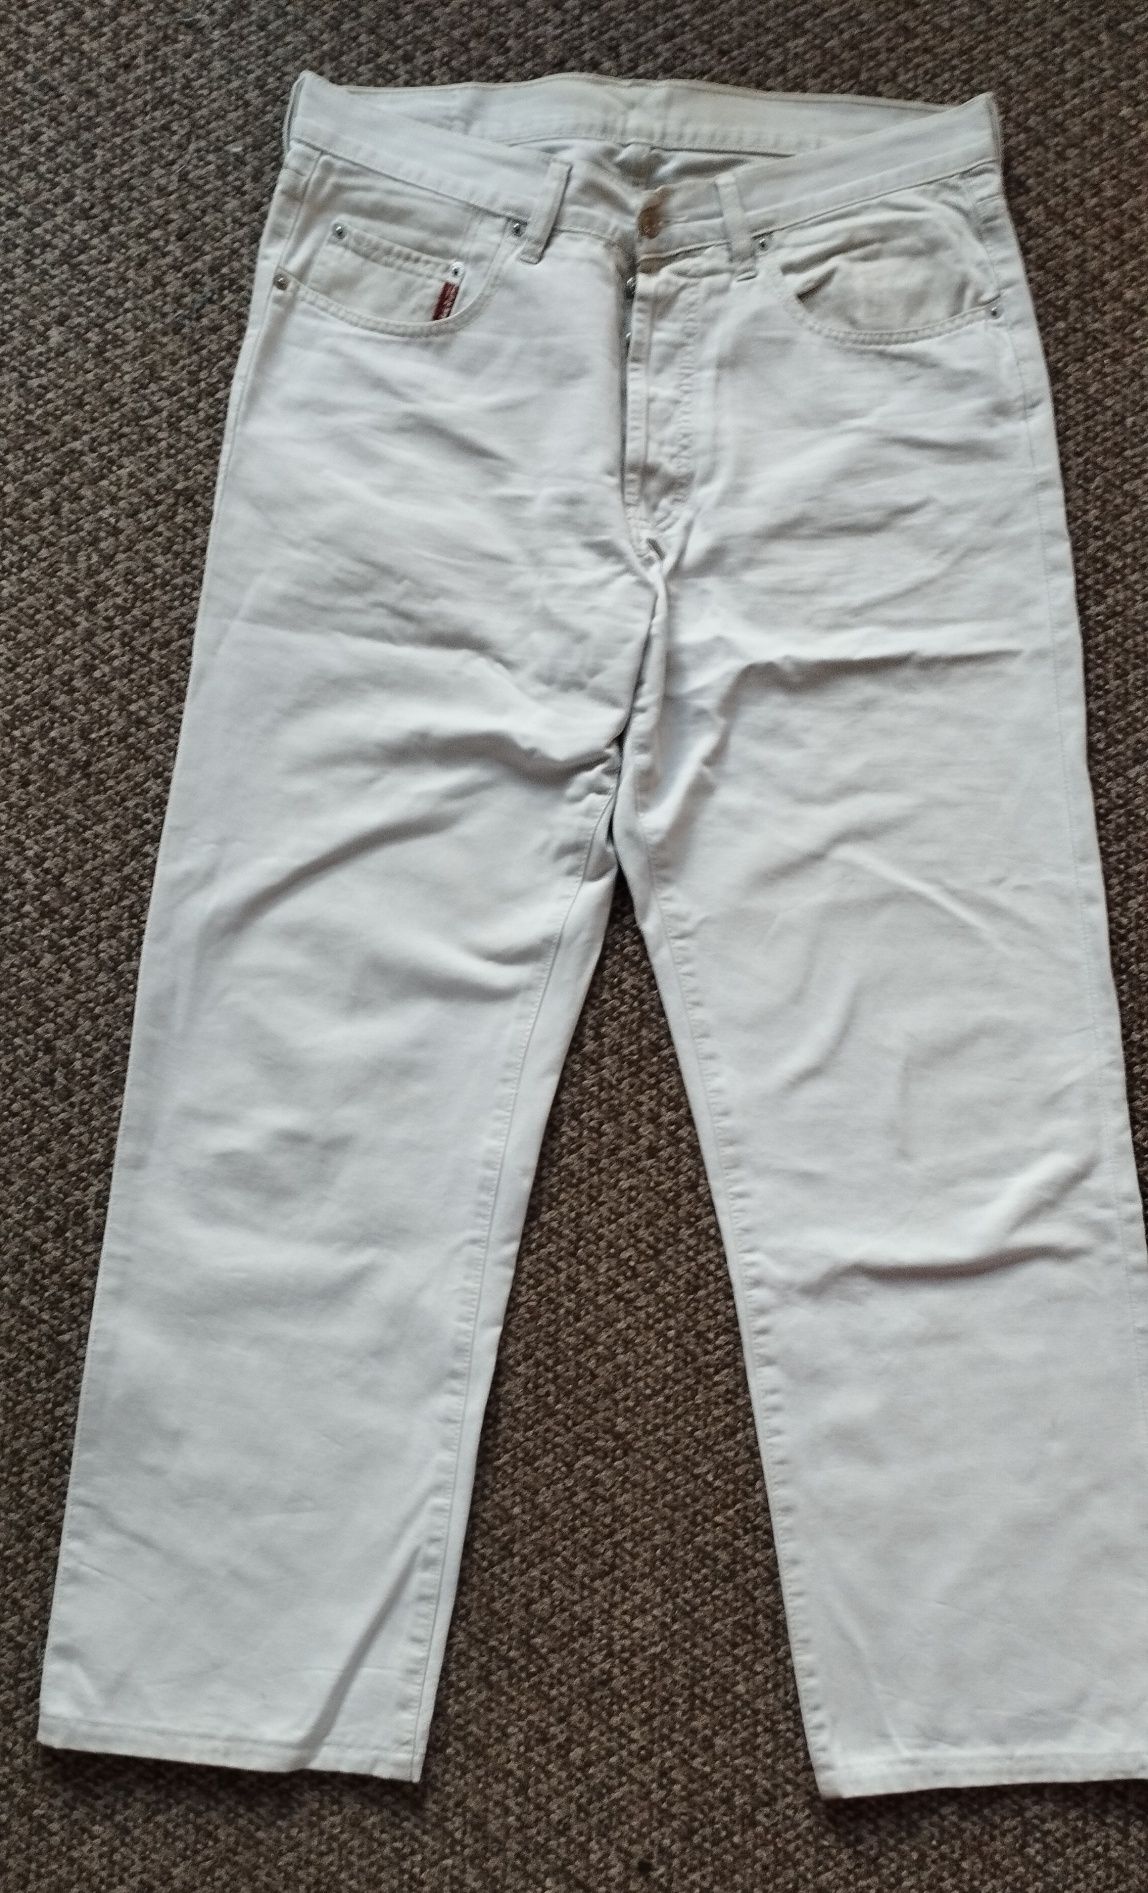 Spodnie jeansowe męskie Big Star. Pas 94 cm